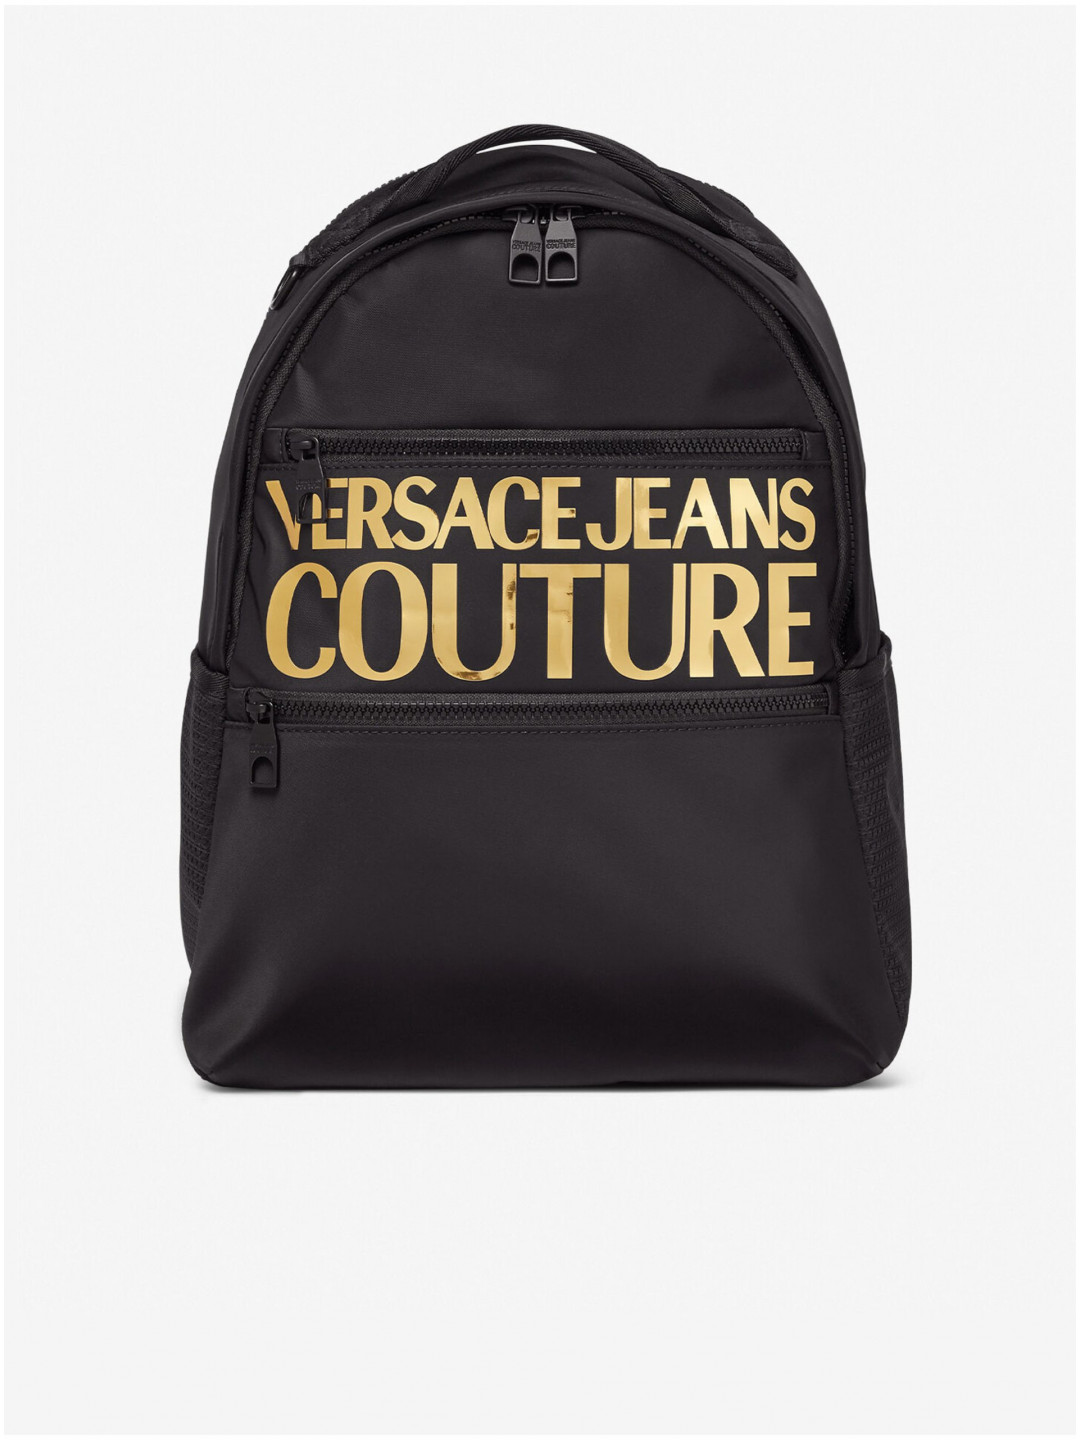 Černý pánský batoh s nápisem Versace Jeans Couture